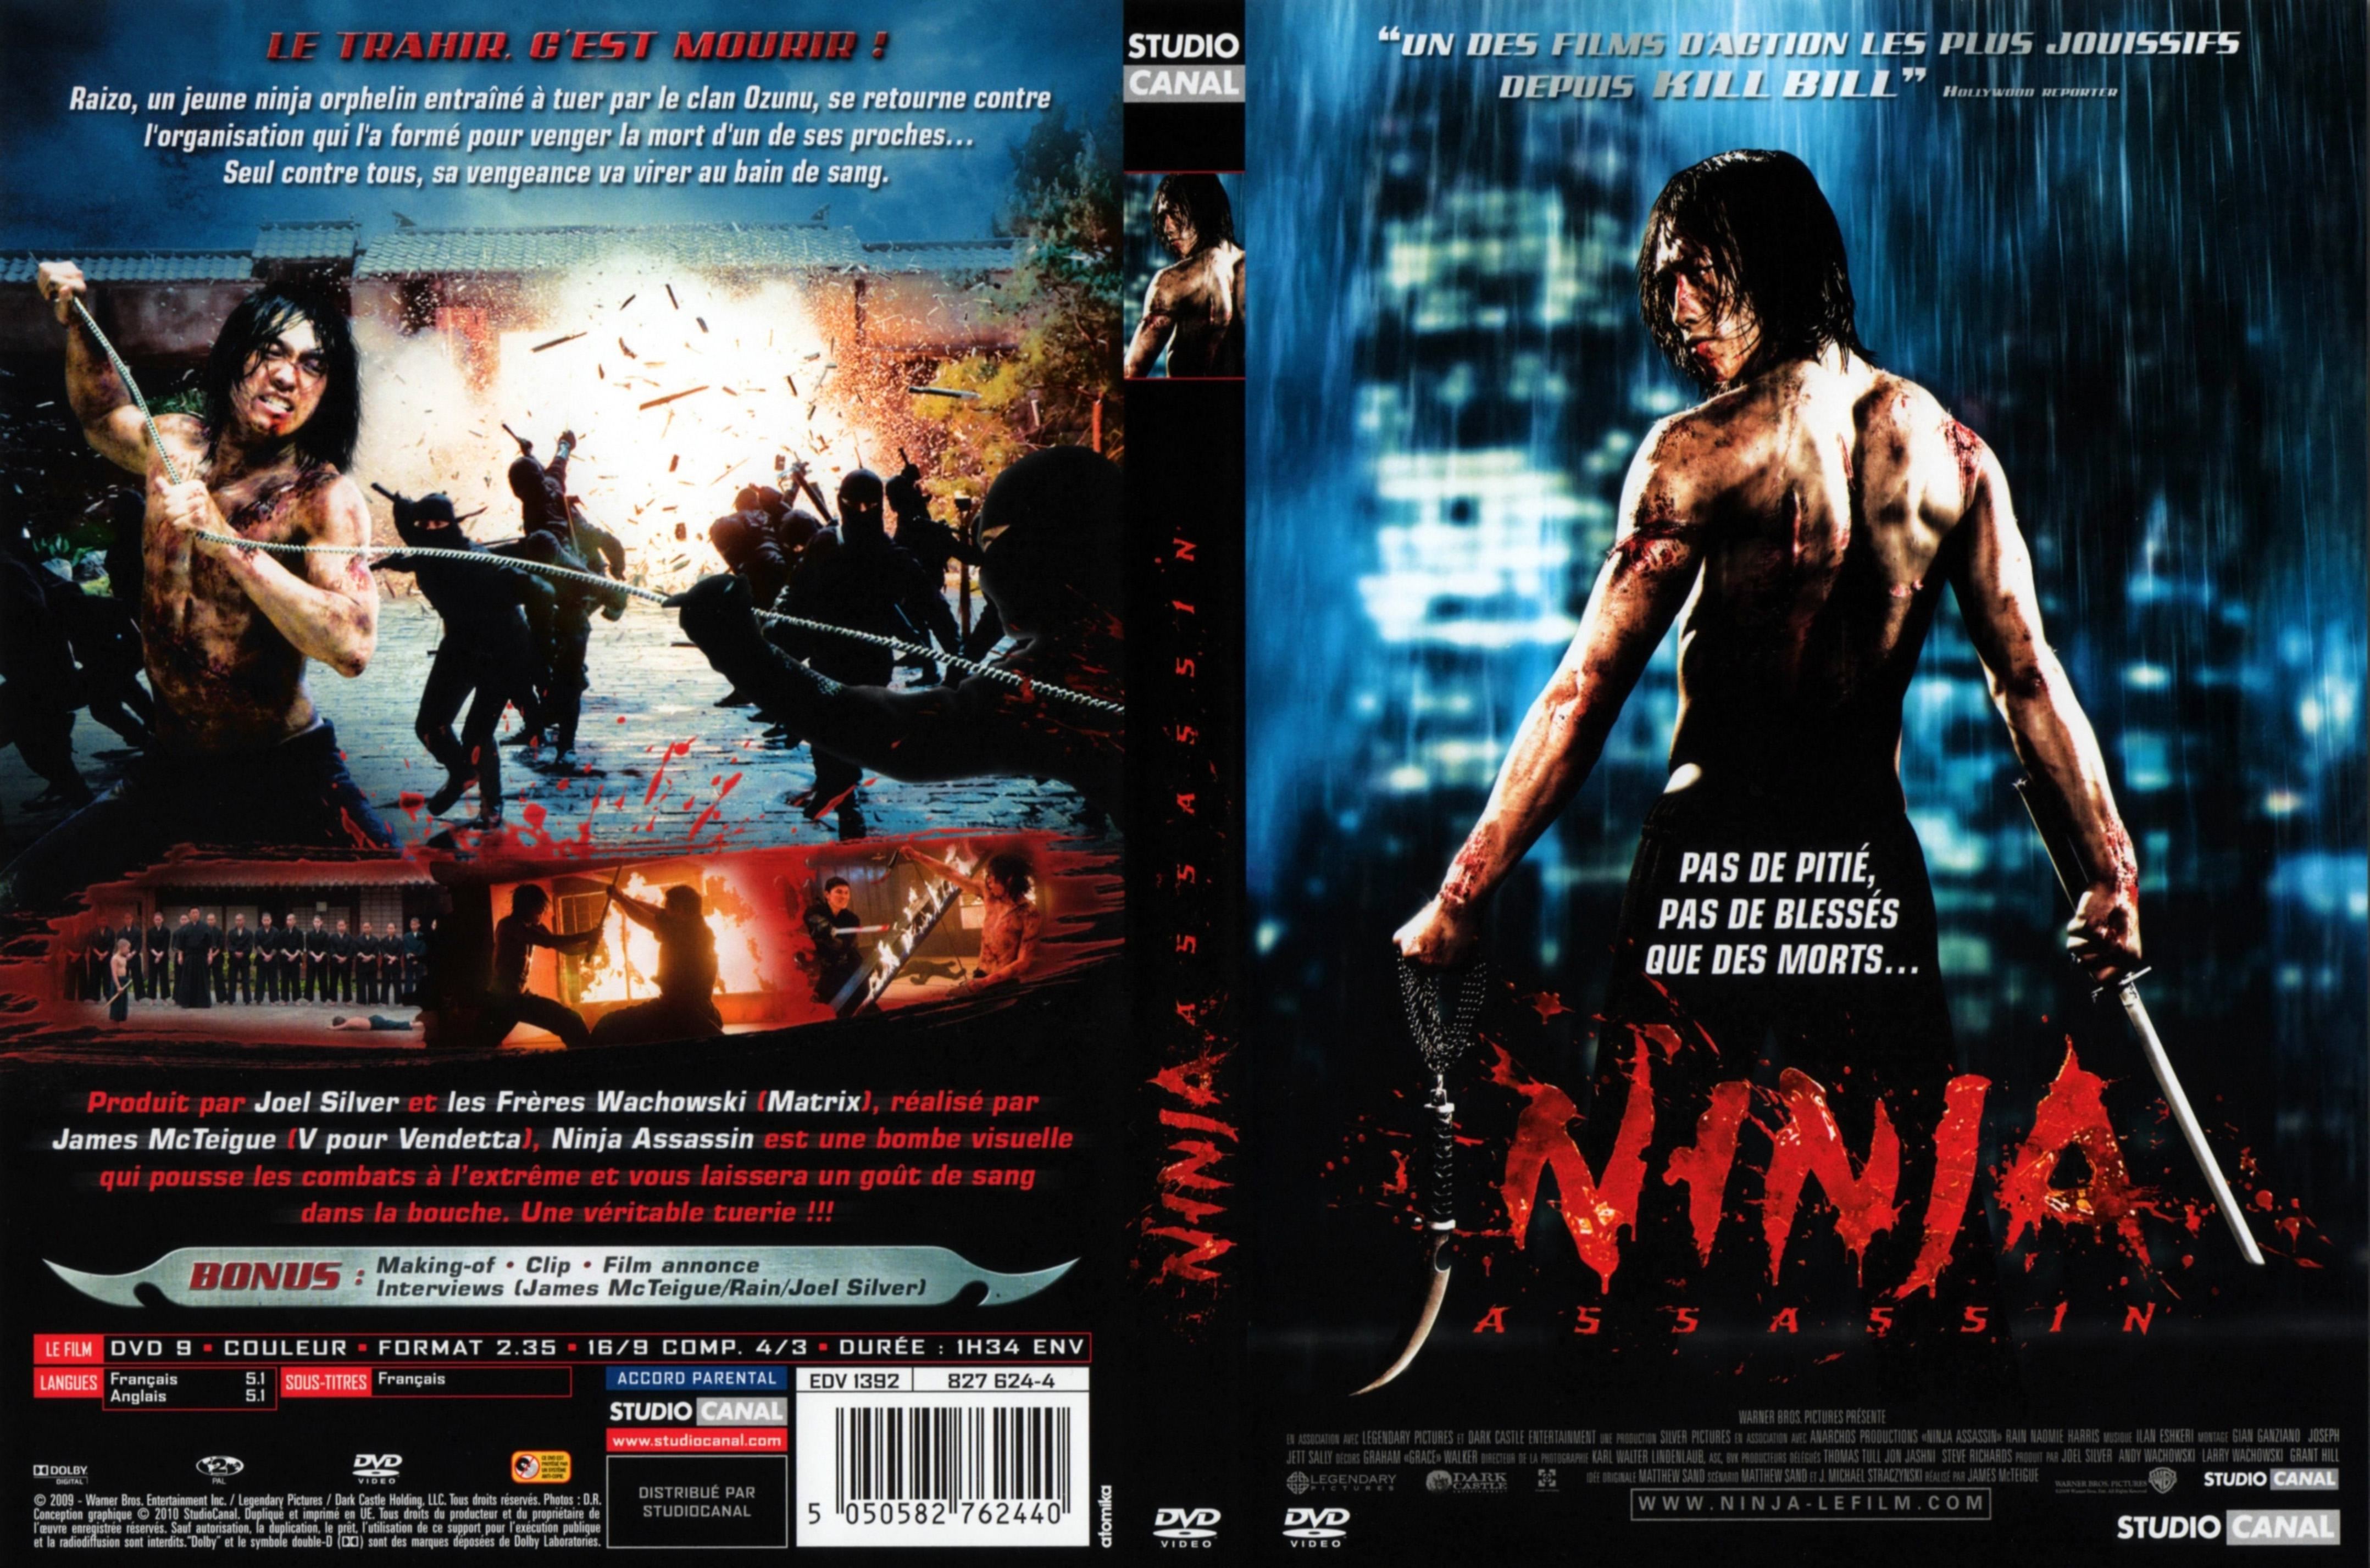 Jaquette DVD Ninja assassin